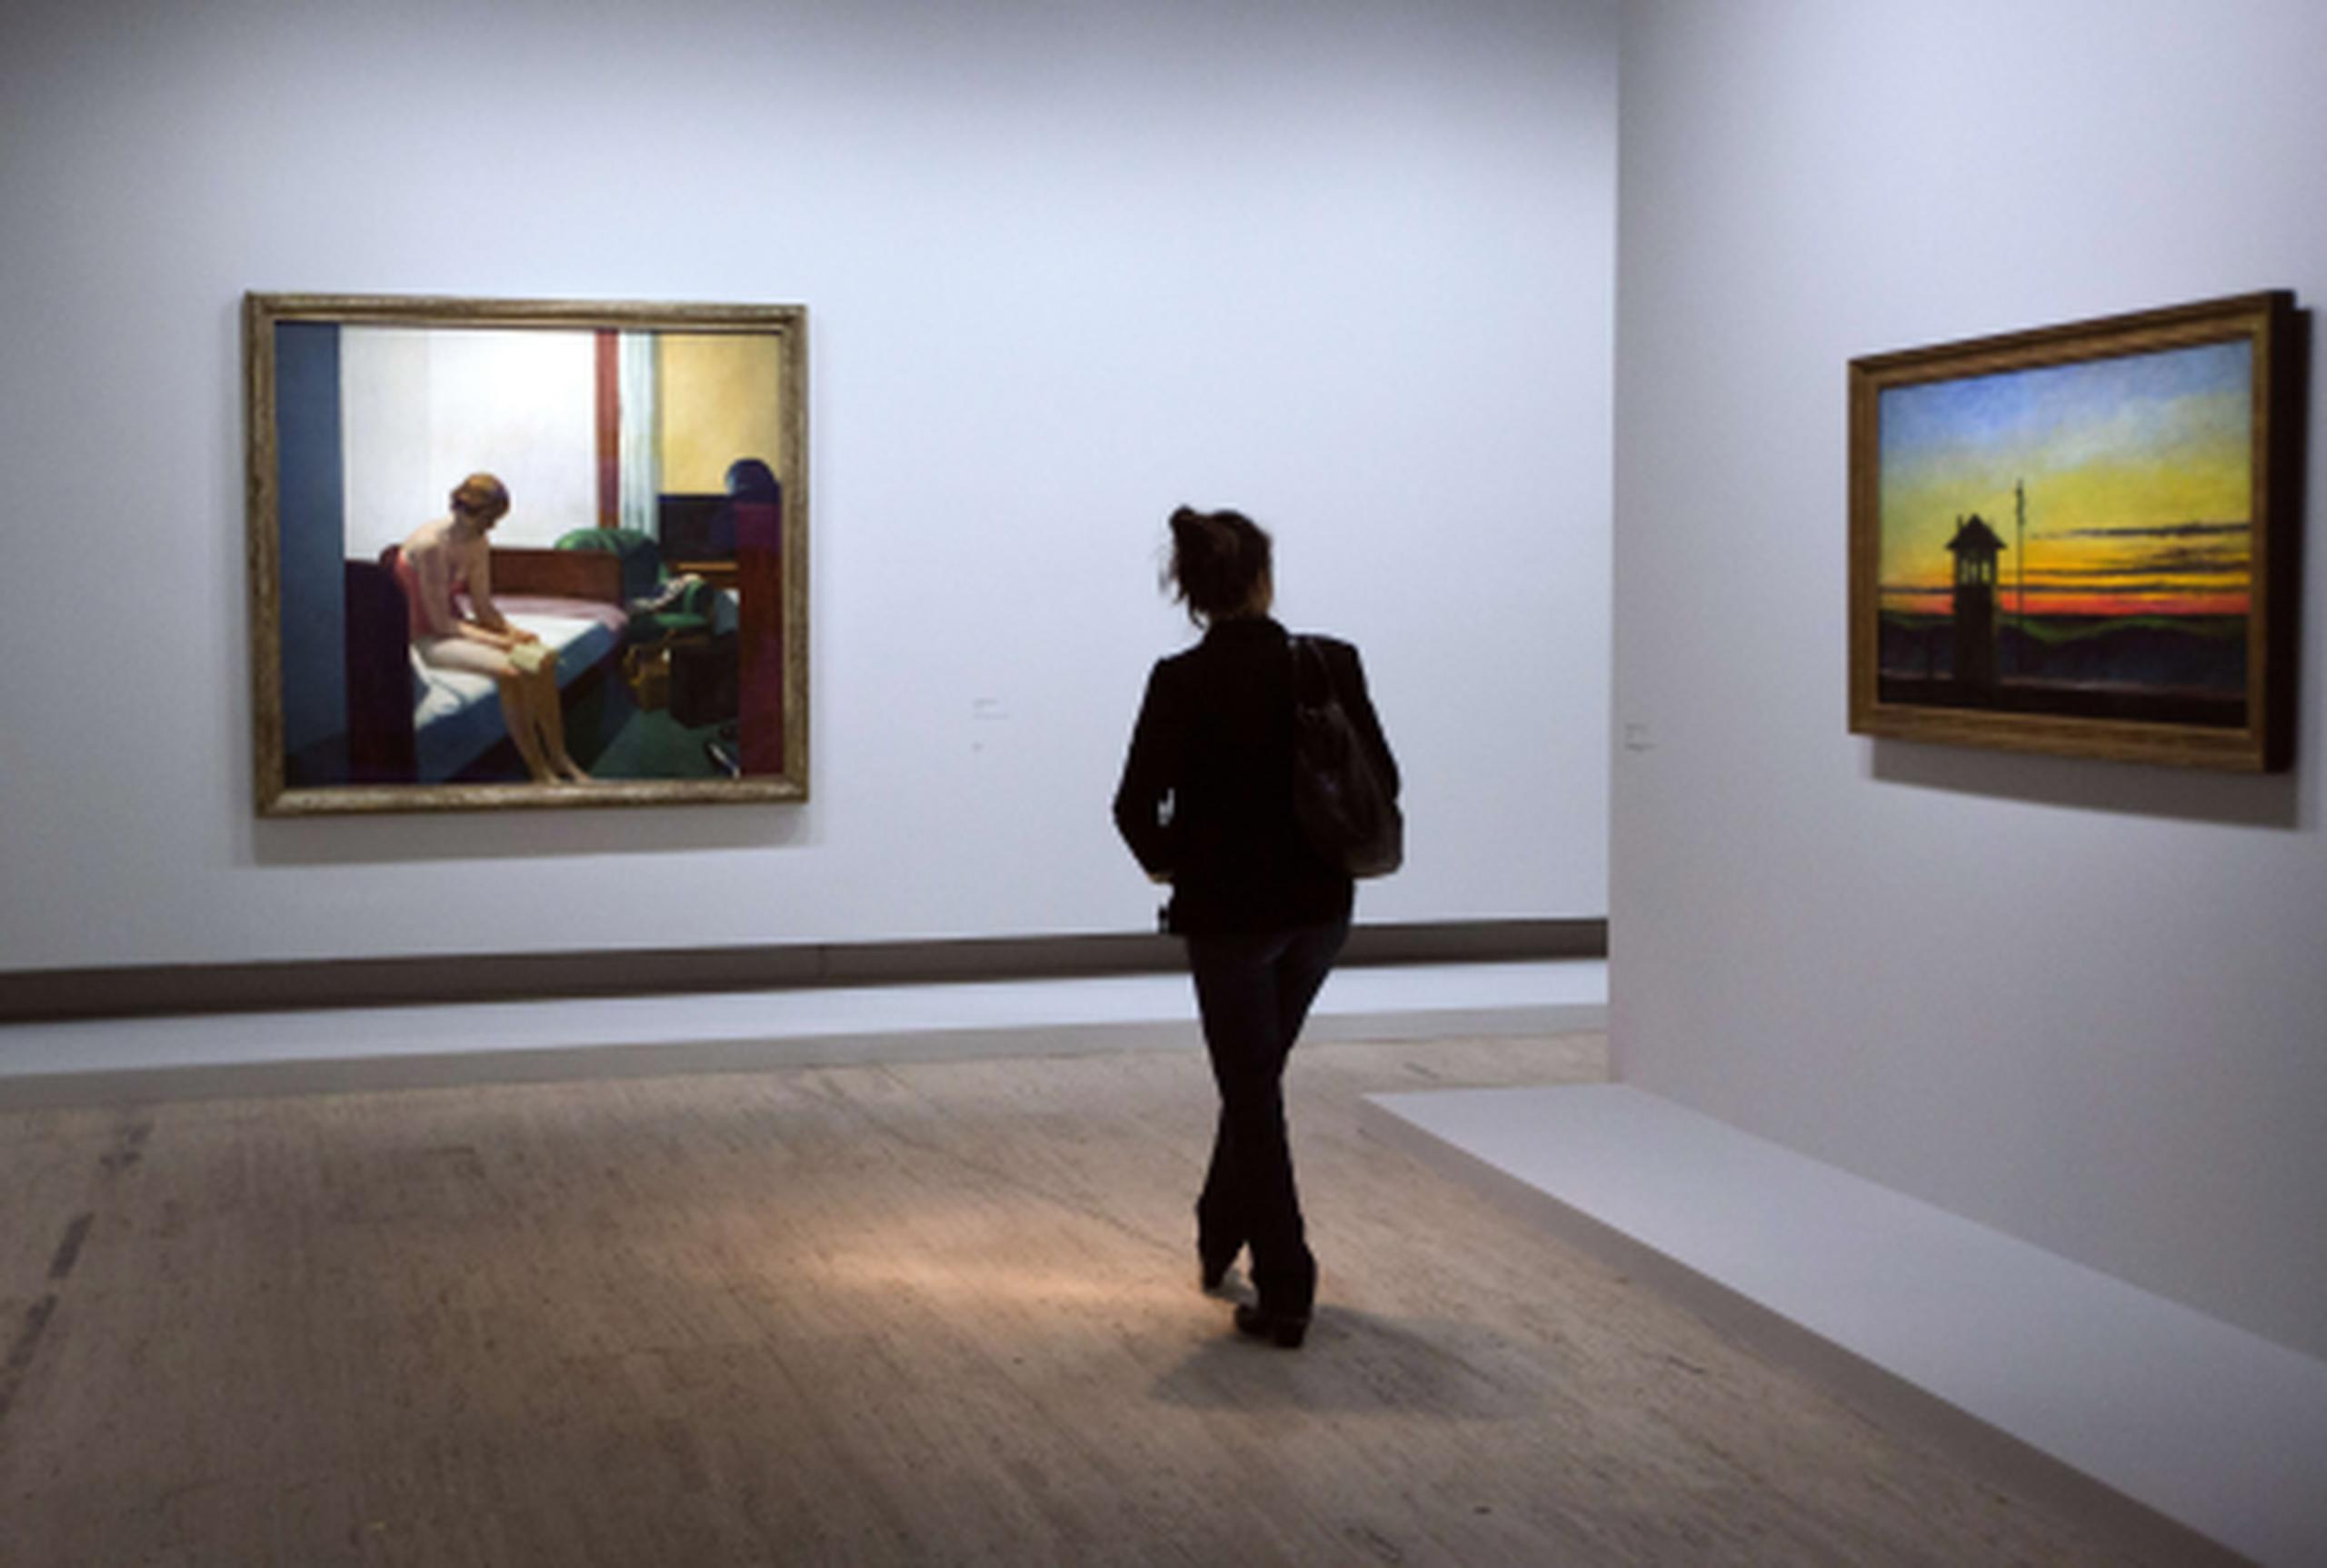 Todalas obras se podrán ver en el Grand Palais de París, después de la retrospectiva que de Hopper mostró hasta muy recientemente el Museo Thyssen Bornemisza de Madrid, y que duplicará el número de las que se exhibieron en la capital española. (AFP/Joel Saget)